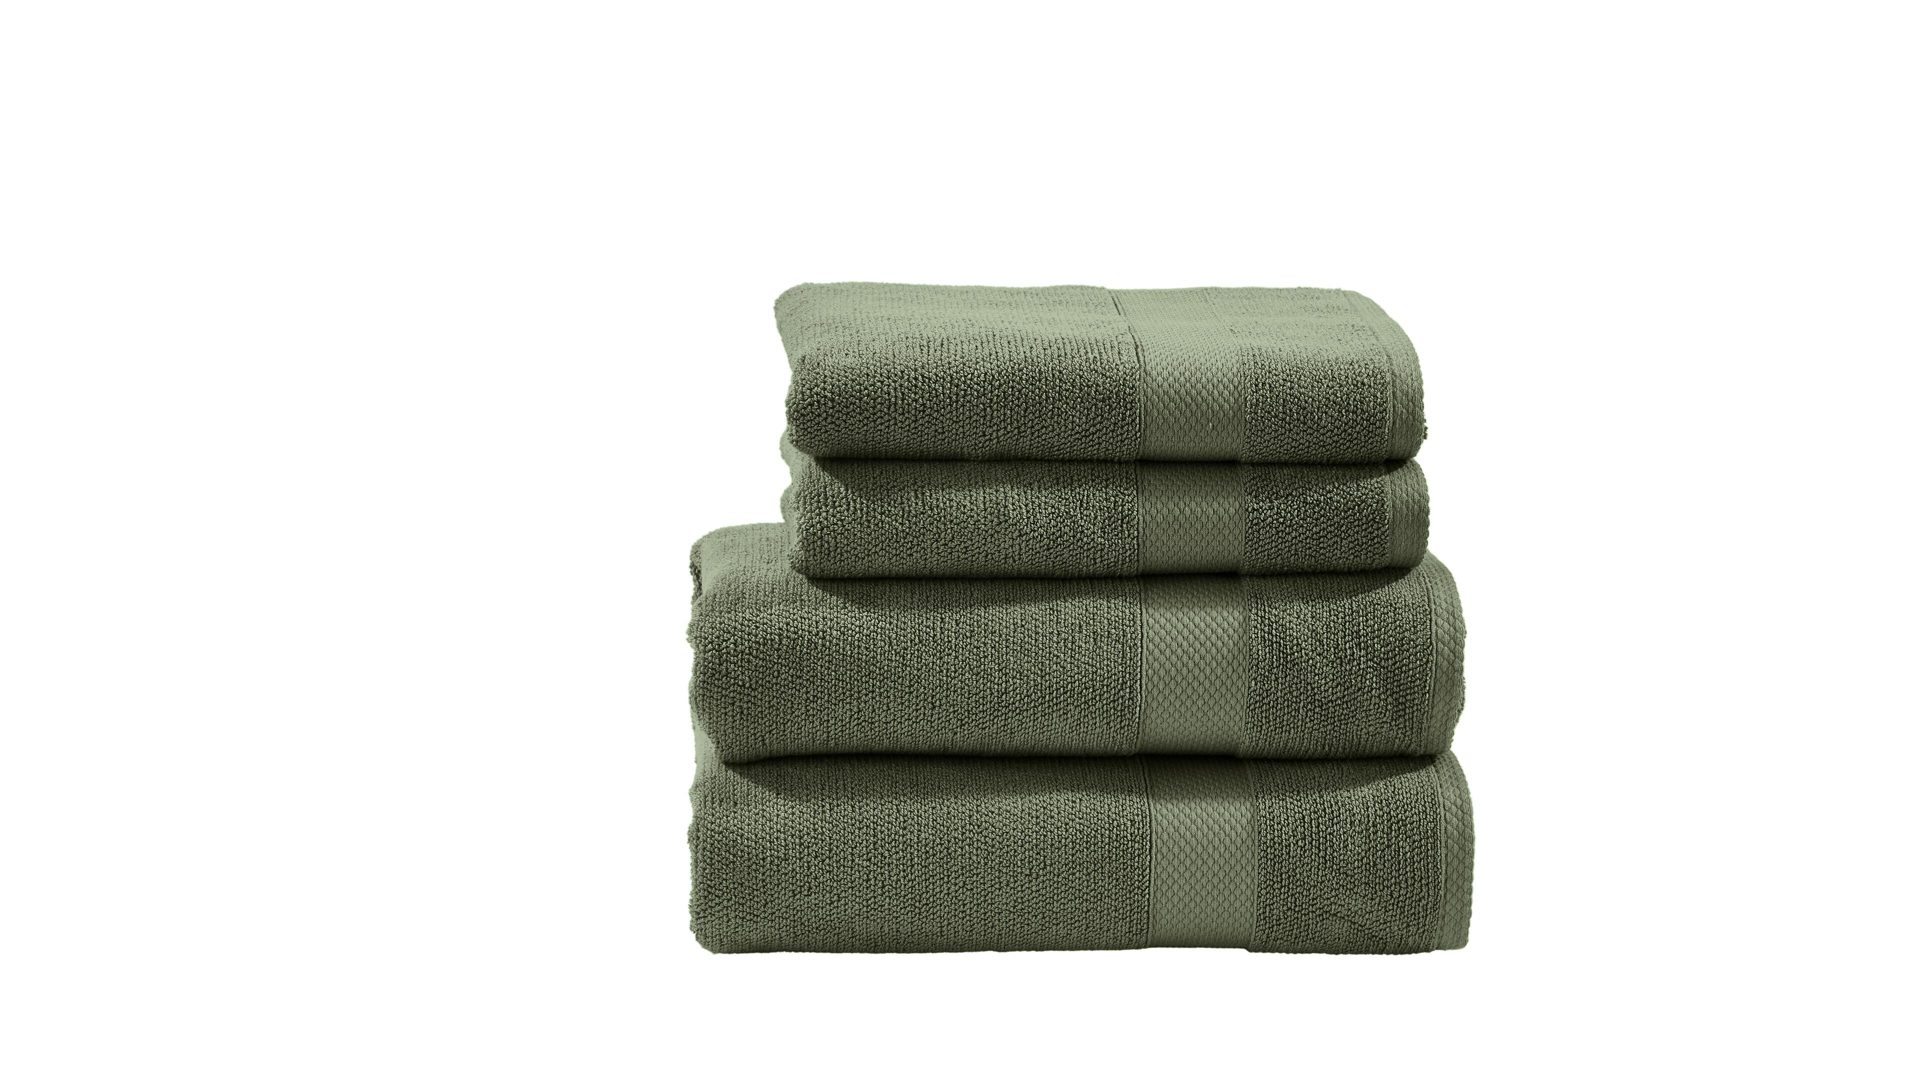 Handtuch-Set Done® by karabel home company aus Stoff in Dunkelgrün DONE® Handtuch-Set Deluxe khakifarbene Baumwolle – vierteilig